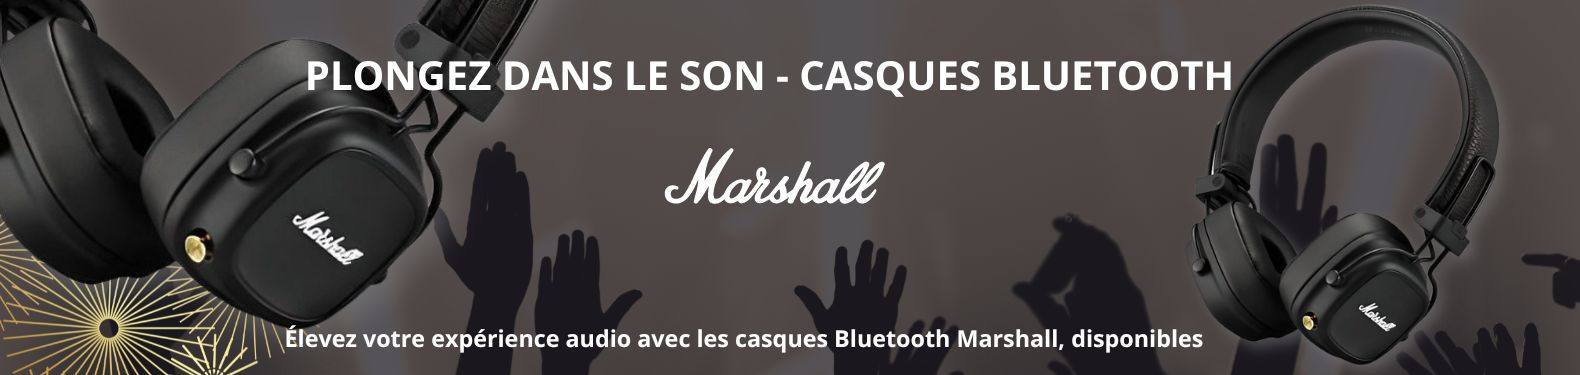 image-vente-de-Casques-Bluetooth-marshall